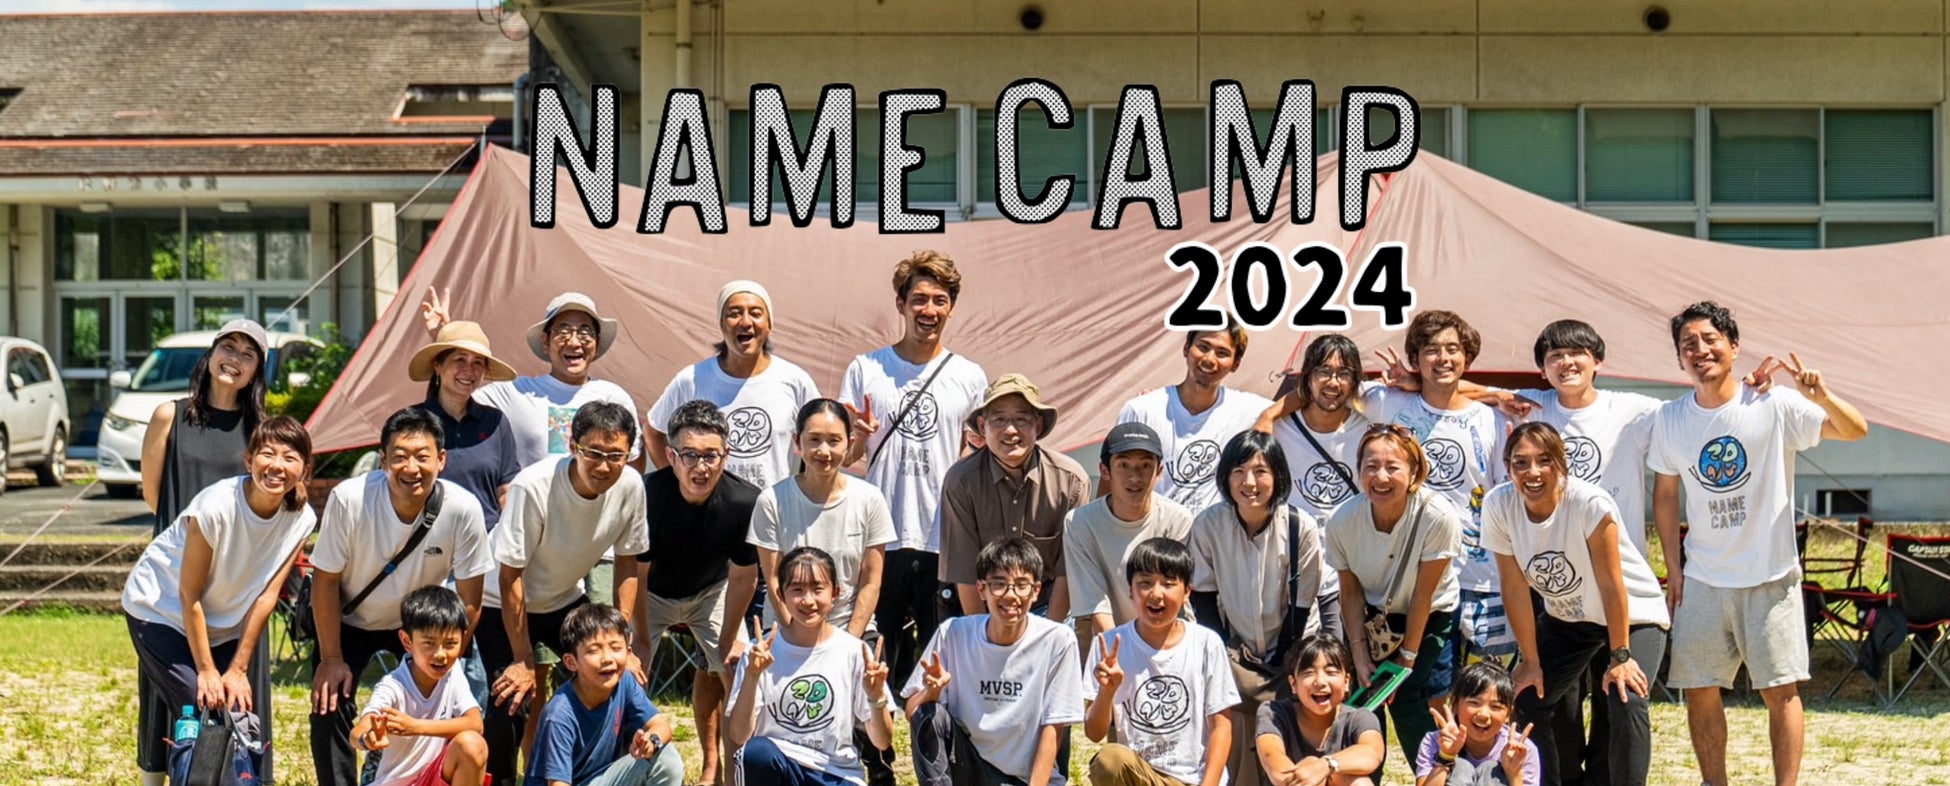 震えるほどの感動が子どもたちの生きる力を呼び起こす大冒険サマーキャンプ！！「NAME CAMP 2024」「NAME CAMP ジュニア 2024」を2024年8月に足摺宇和海国立公園で開催！